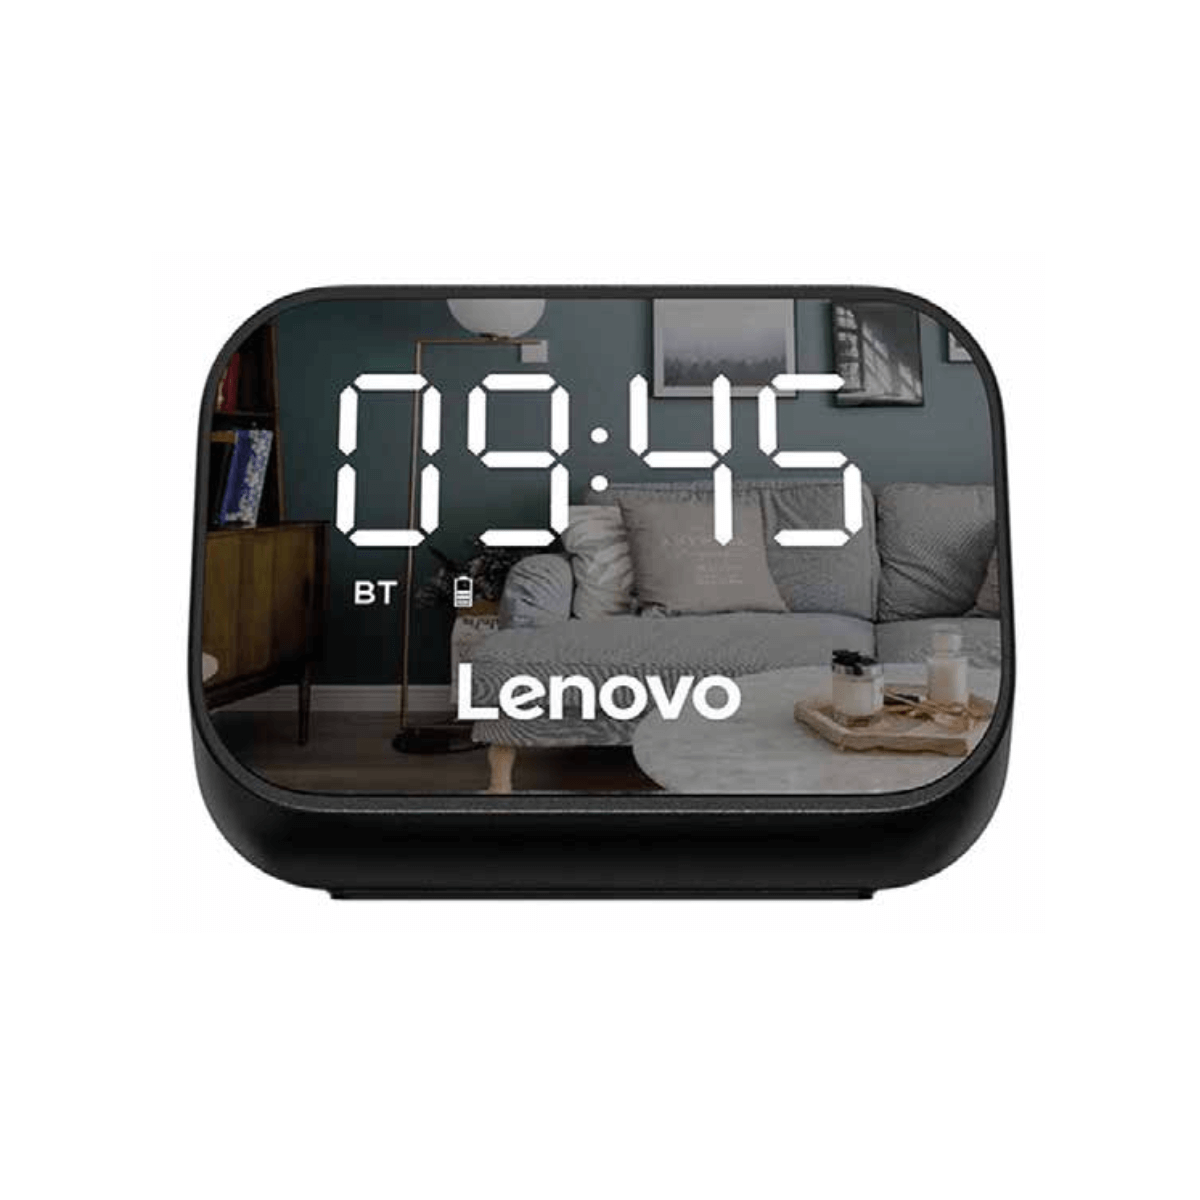 Parlante Bluetooth Lenovo TS13 Reloj Despertador Digital Black